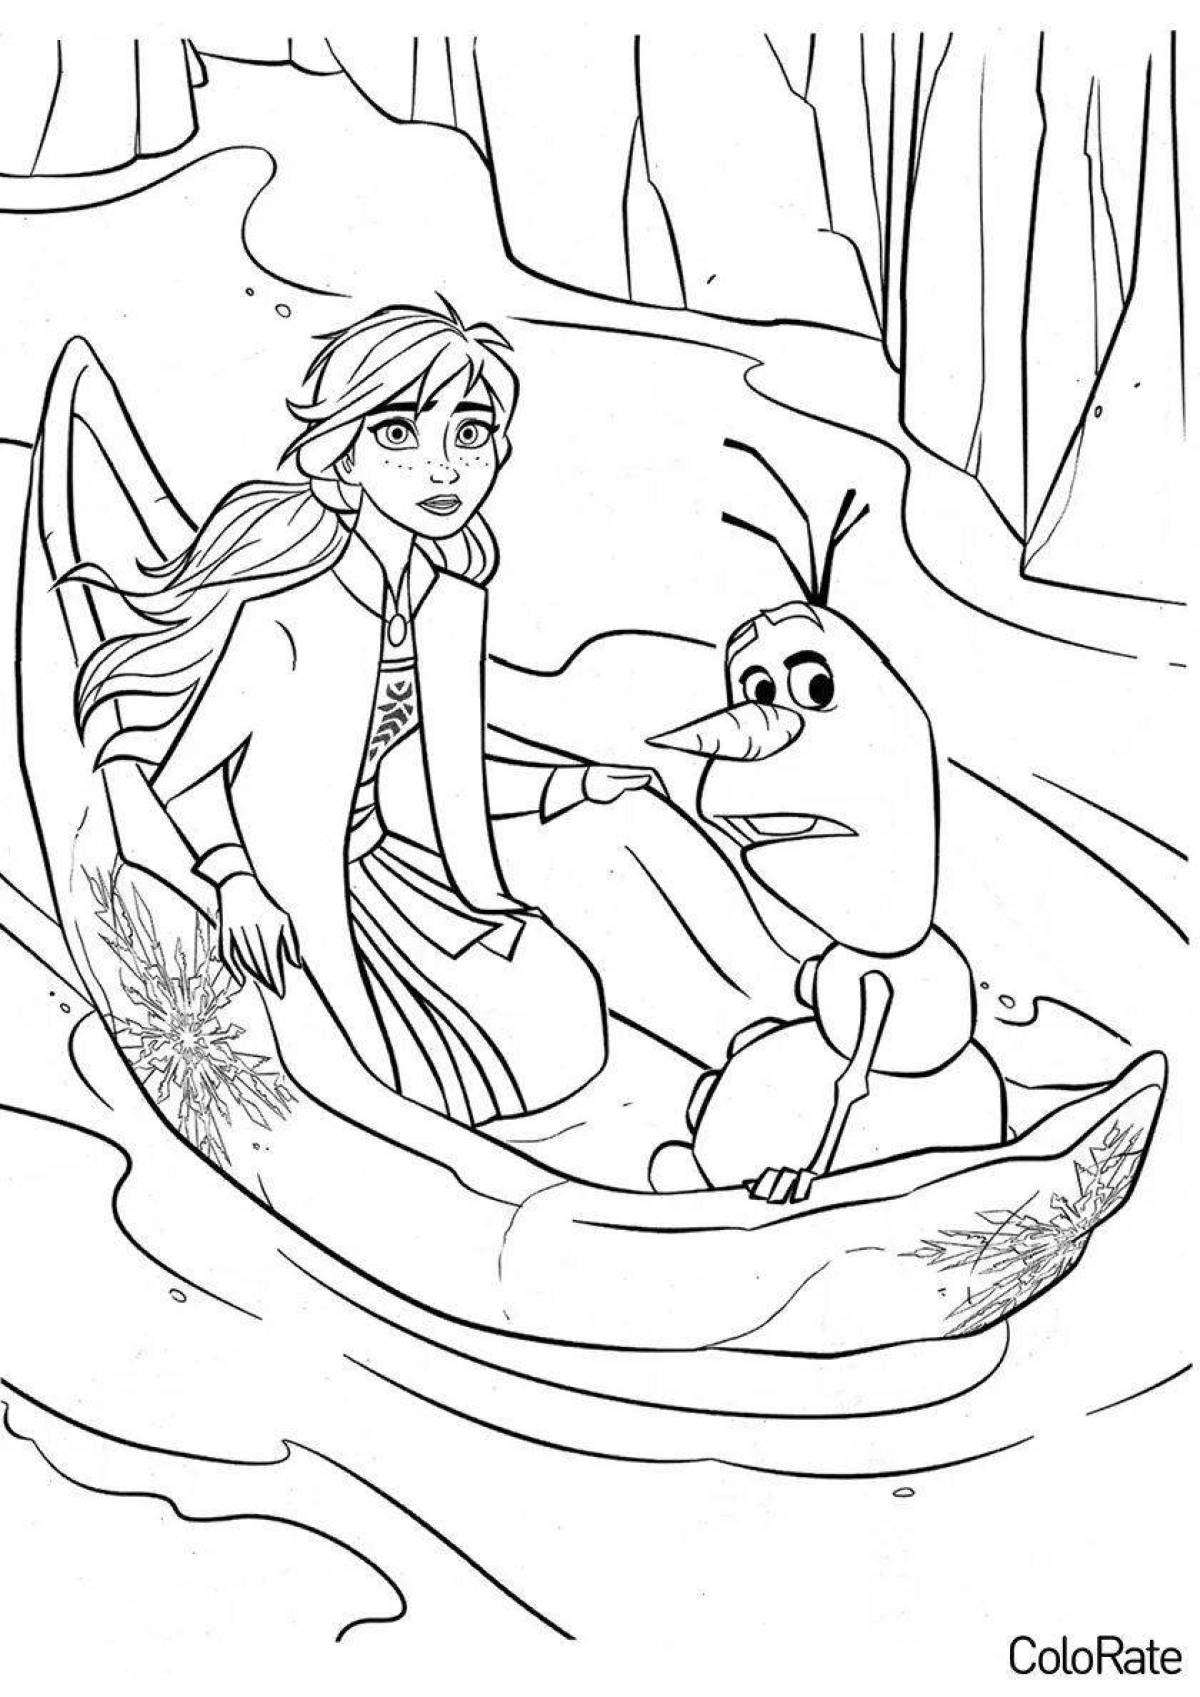 Elsa and olaf fun coloring